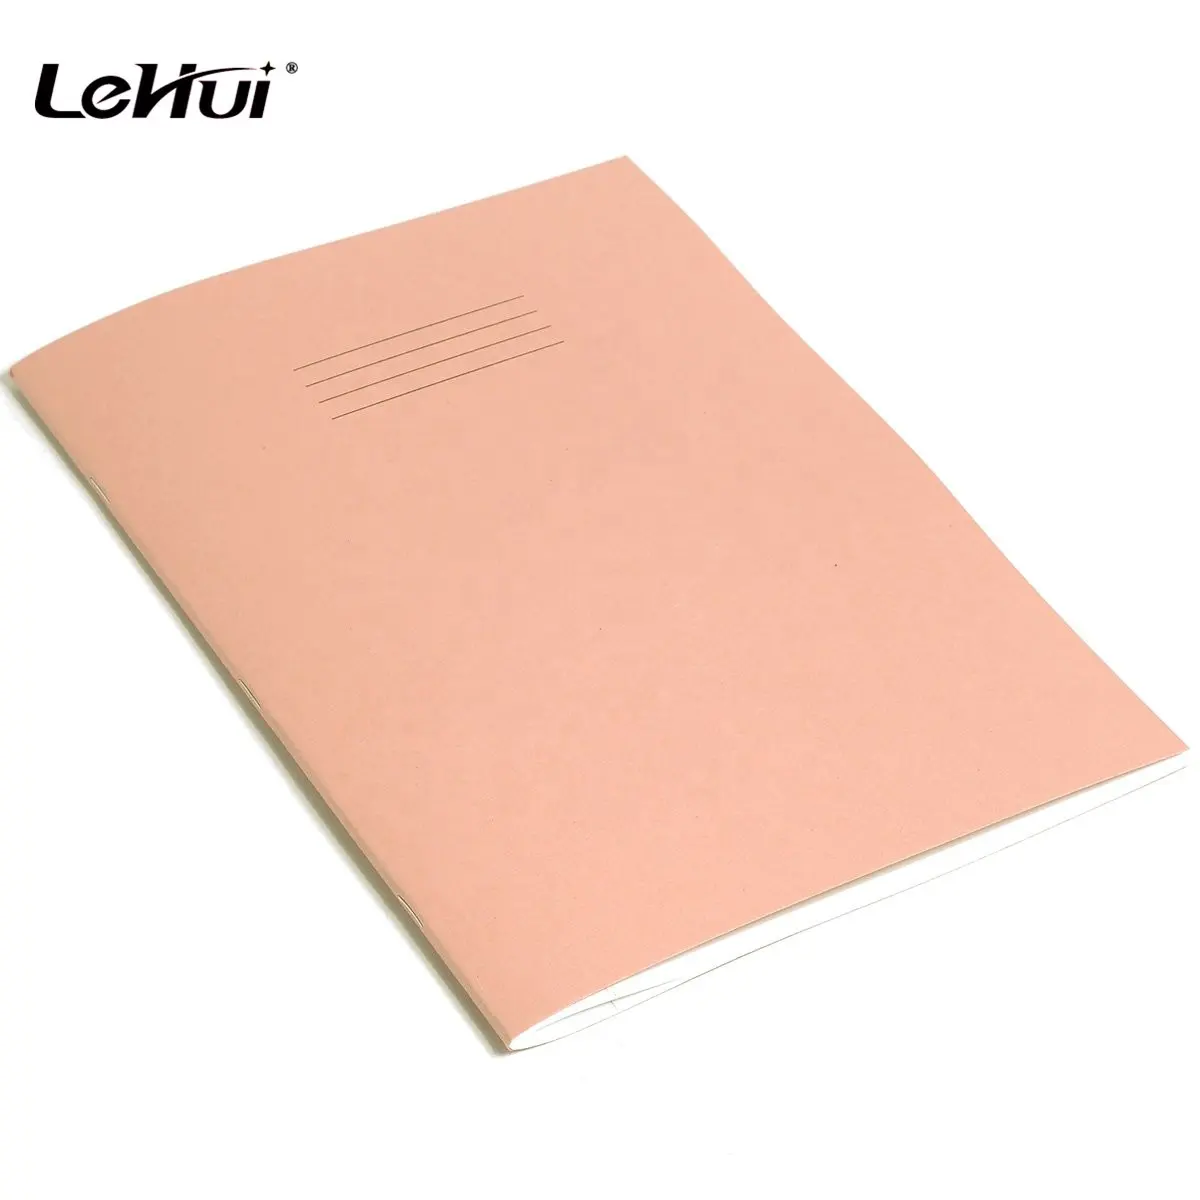 Lehui 공장 저렴한 초등학교 노트북 종이 핑크 A4 크기 80 페이지 줄 지어 학교 아이들을위한 운동 책